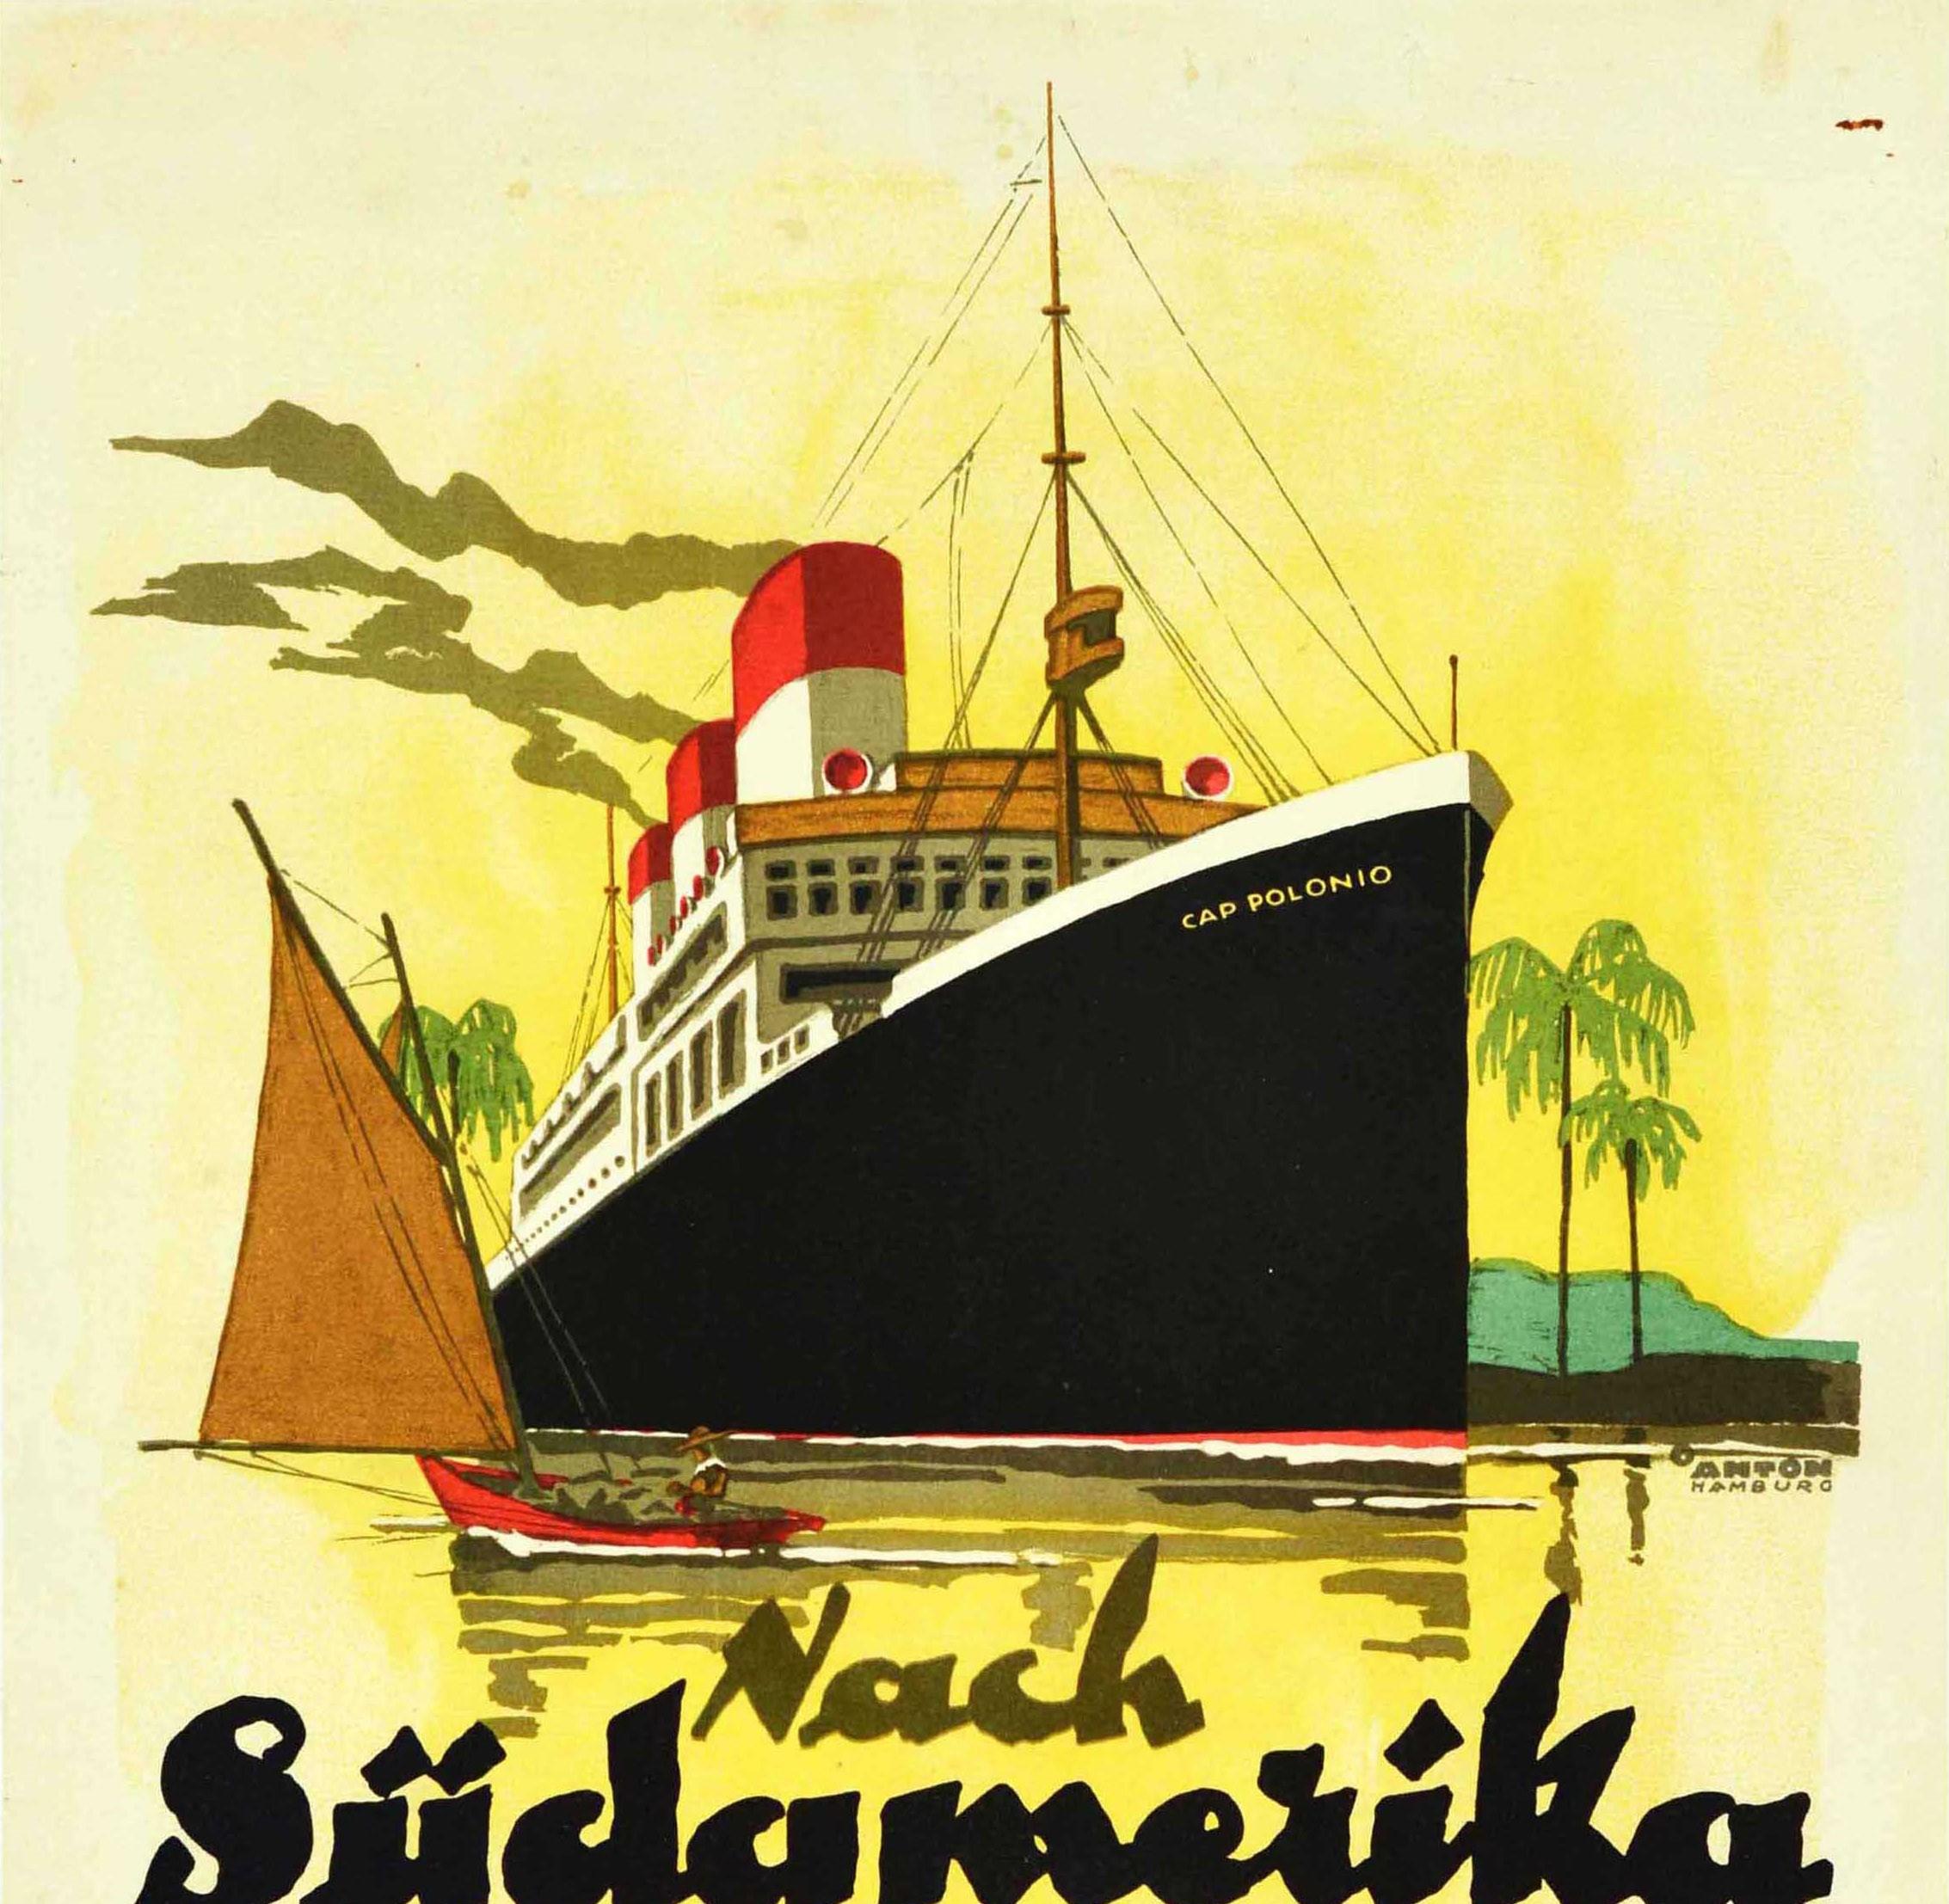 Affiche rtro originale, Sudamerika S Amrique, Hamburg Sud Cruise Ship Cap Polonio - Print de Ottomar Anton